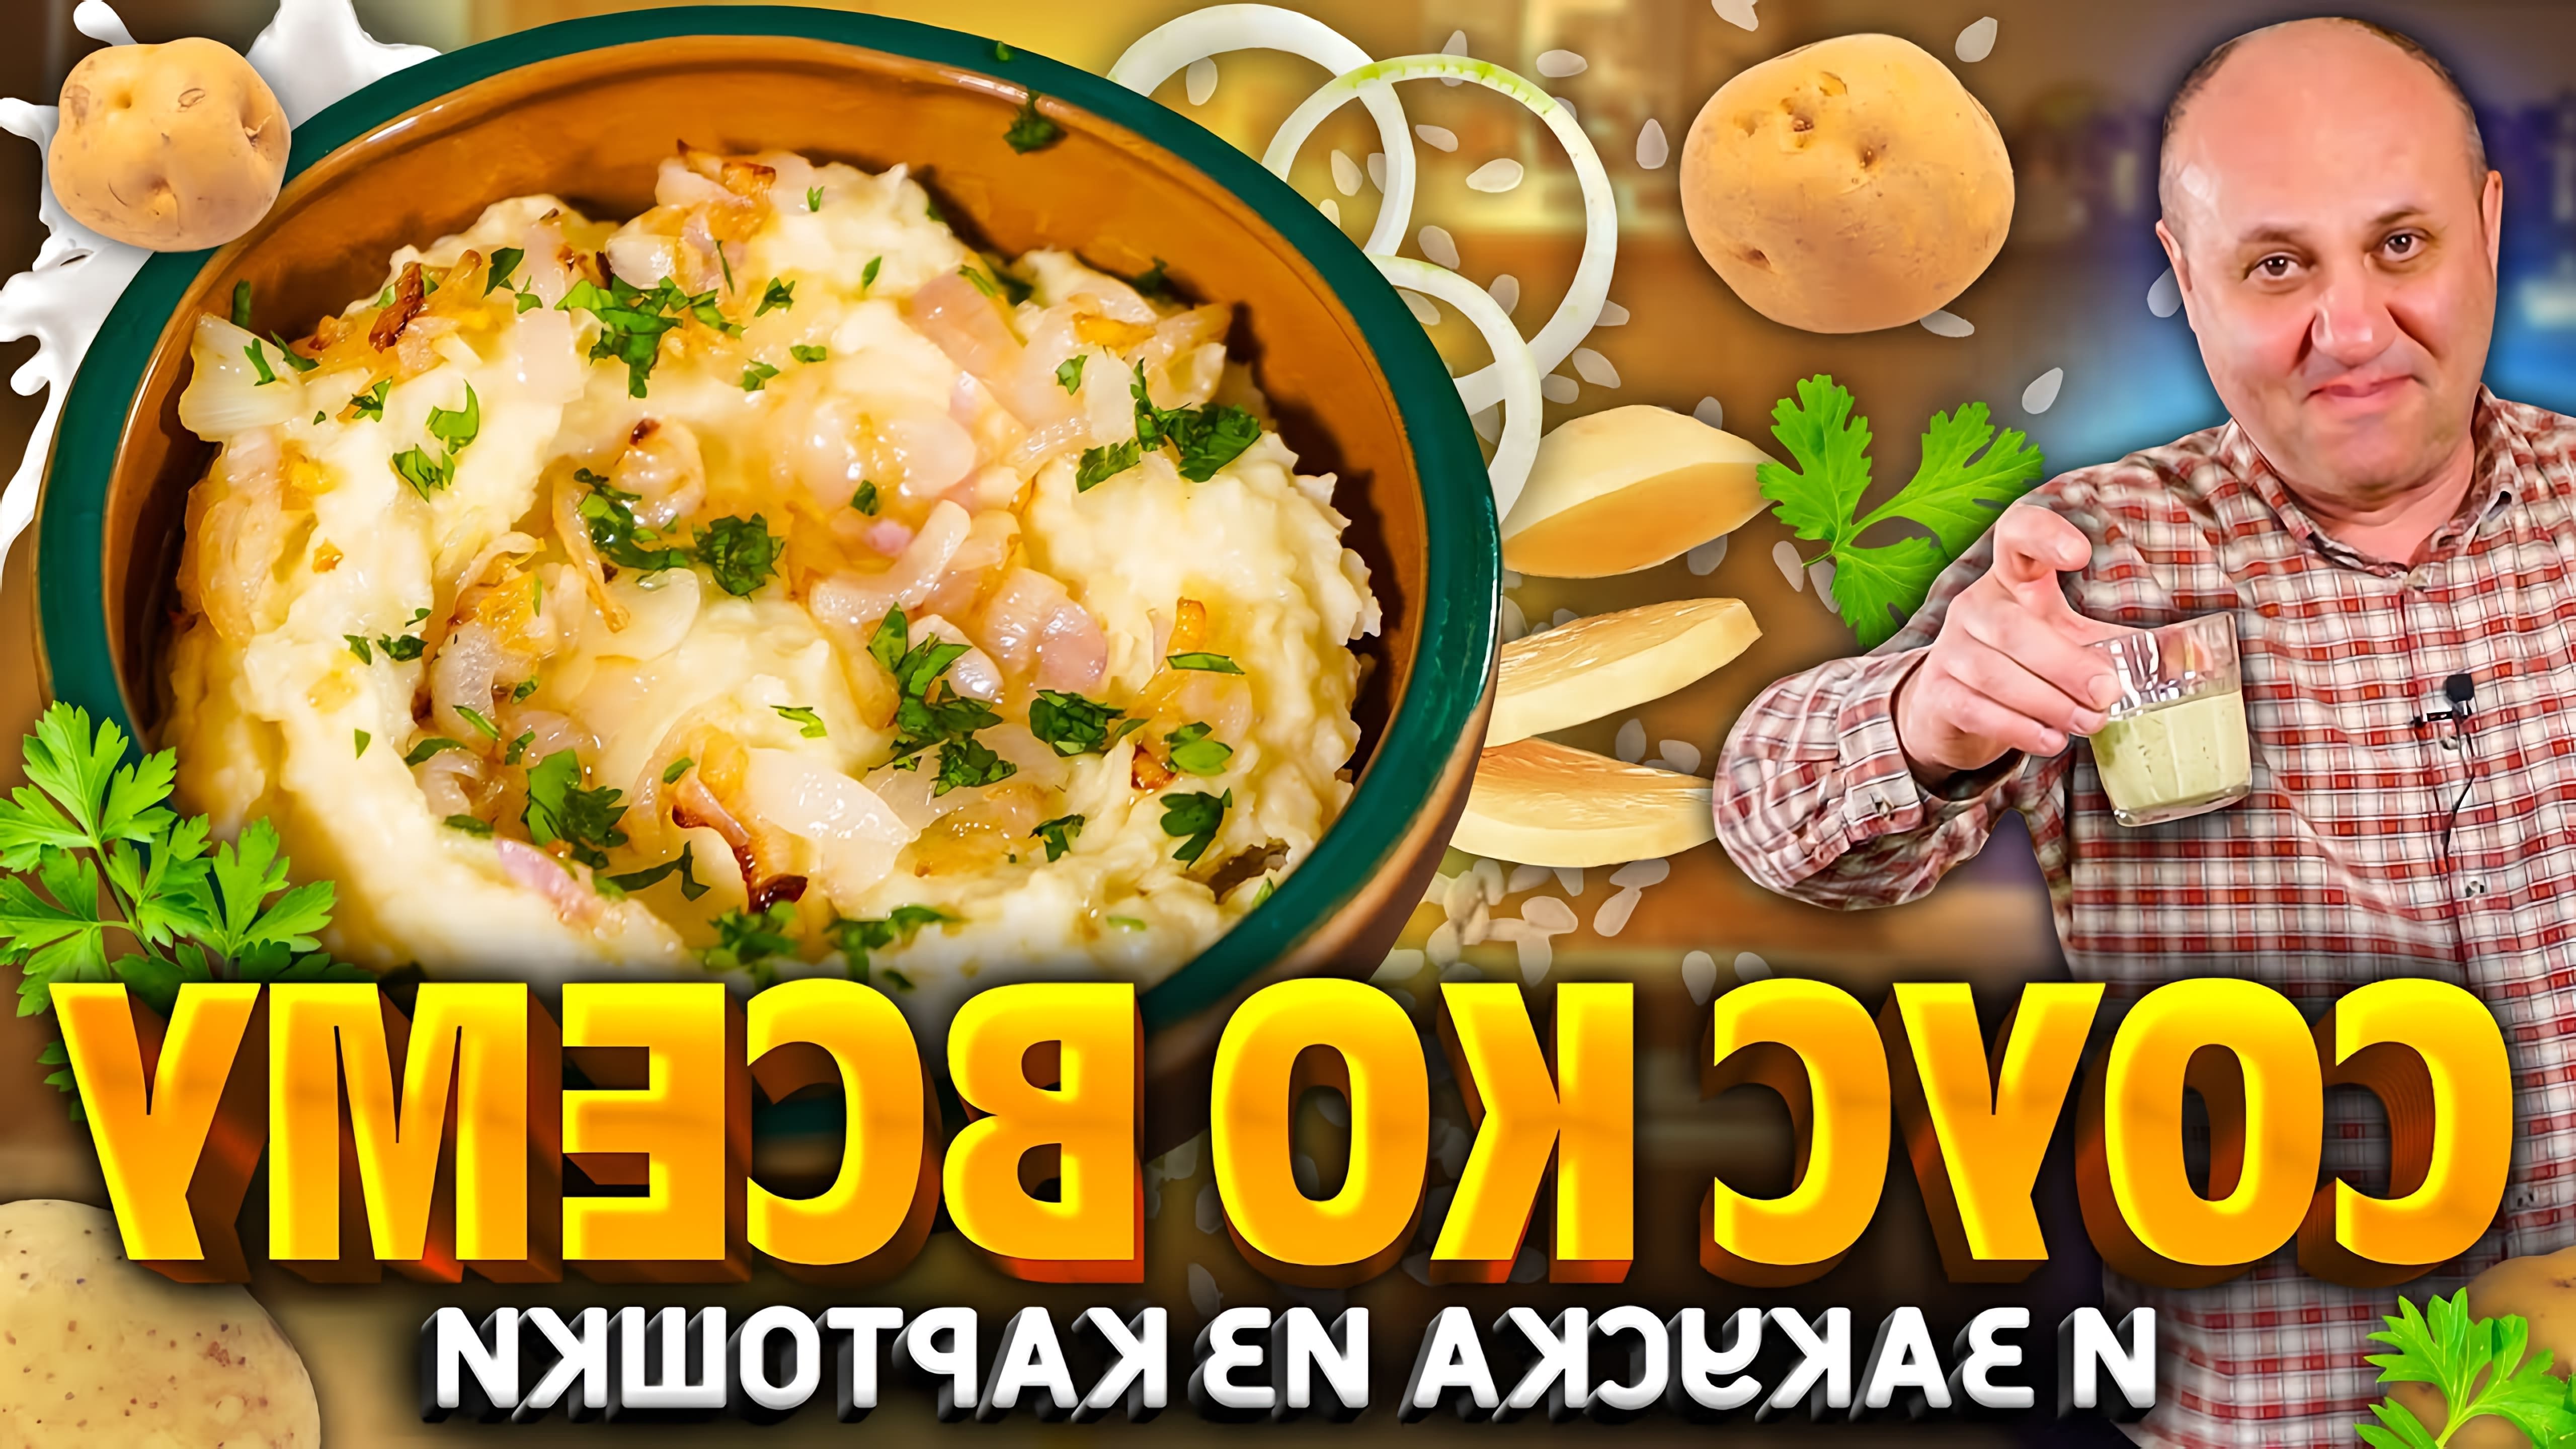 В этом видео шеф-повар Илья Лазерсон показывает, как приготовить закуску из картошки и холодный соус, который подходит к любой еде